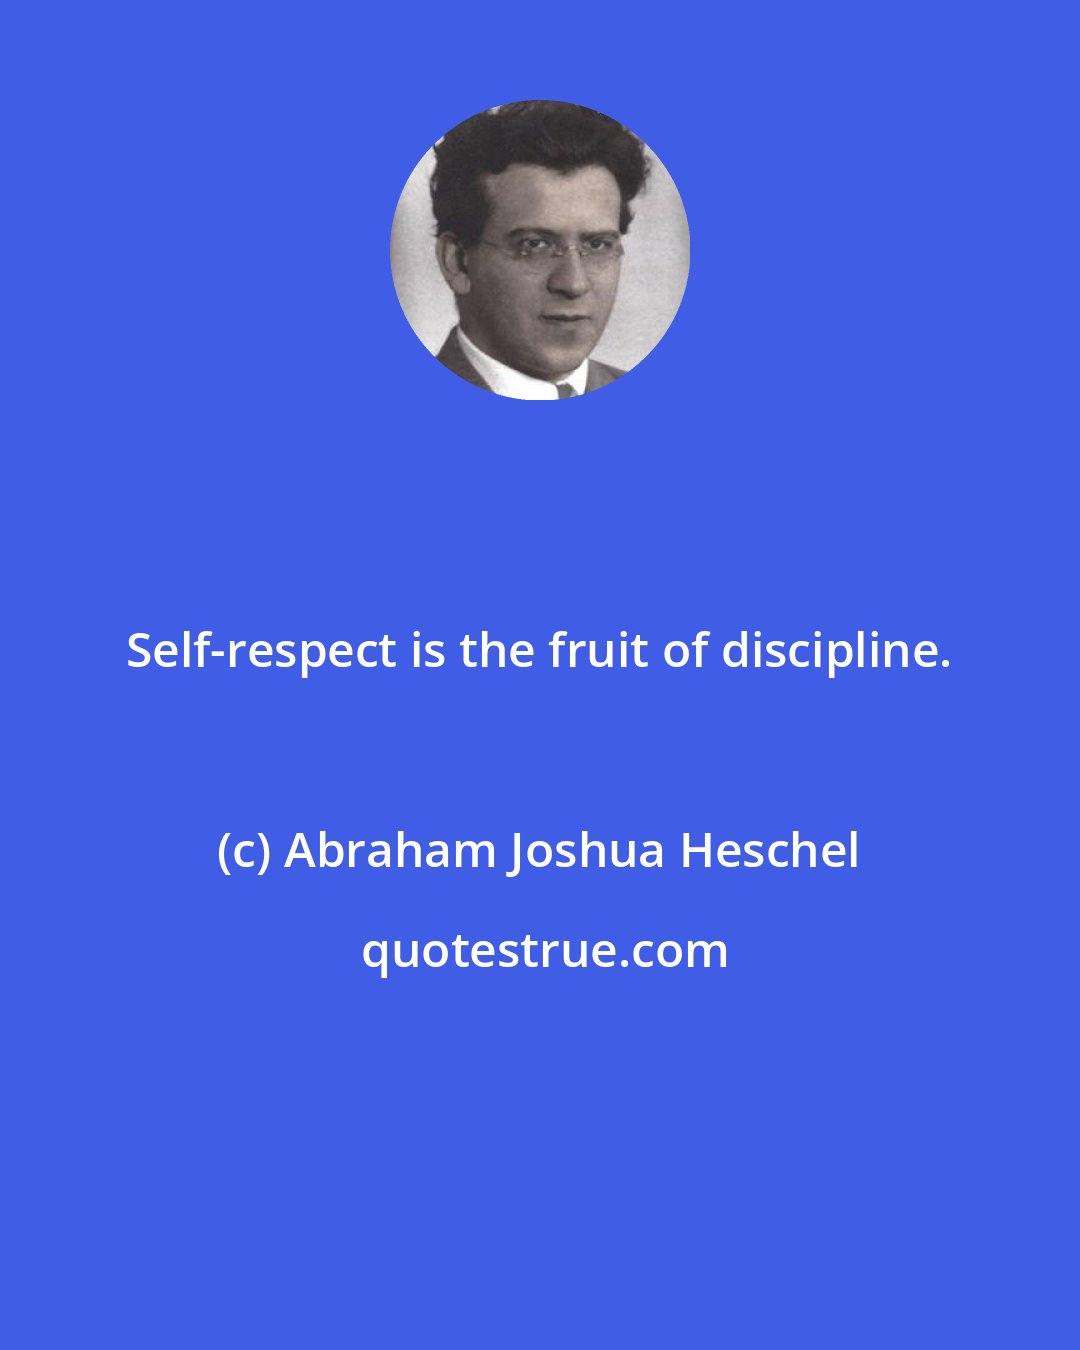 Abraham Joshua Heschel: Self-respect is the fruit of discipline.